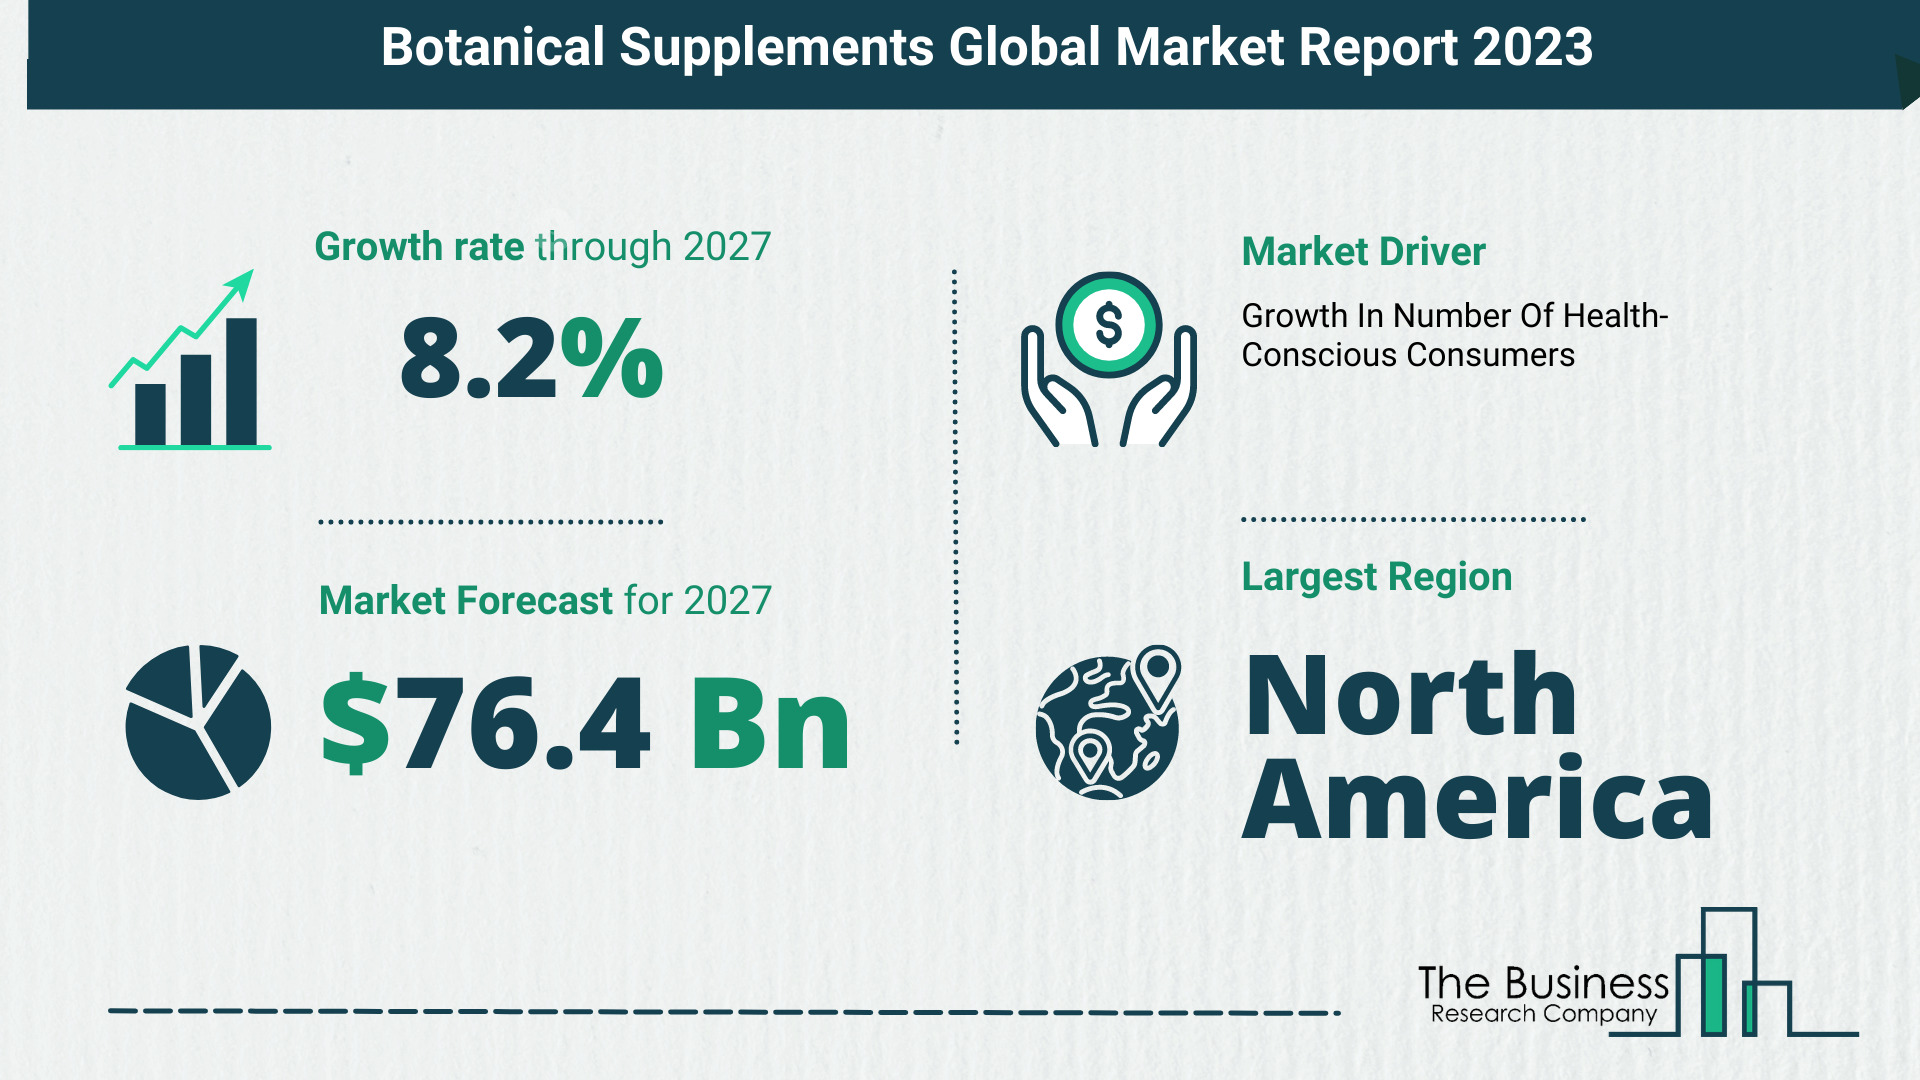 Botanical Supplements Market Forecast 2023: Forecast Market Size, Drivers And Key Segments